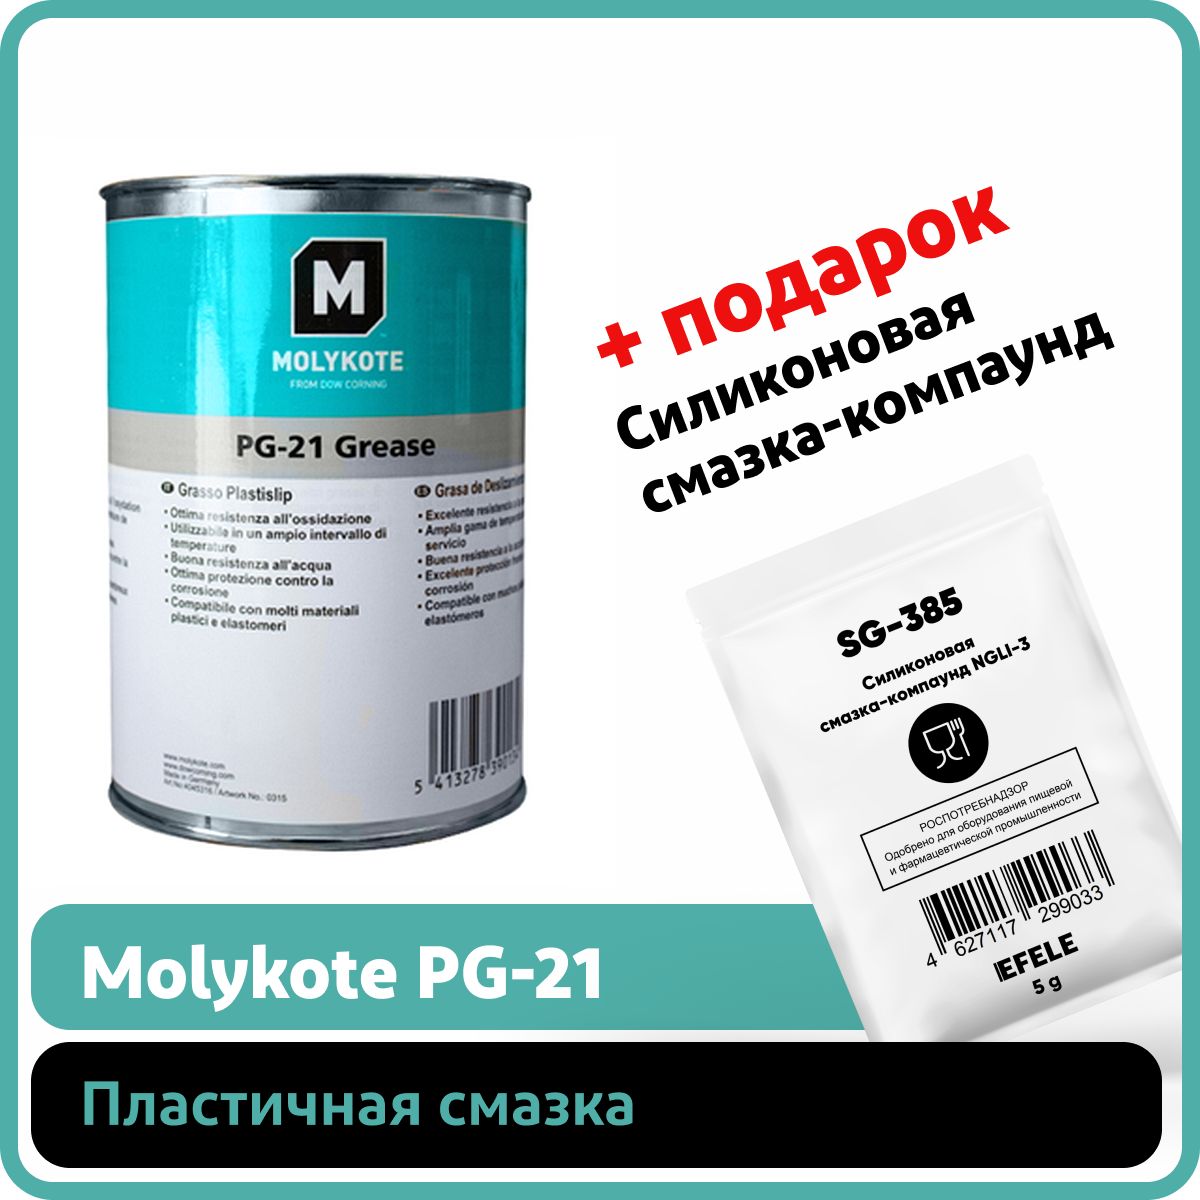 ПластичнаясмазкаMolykotePG-21(1кг)